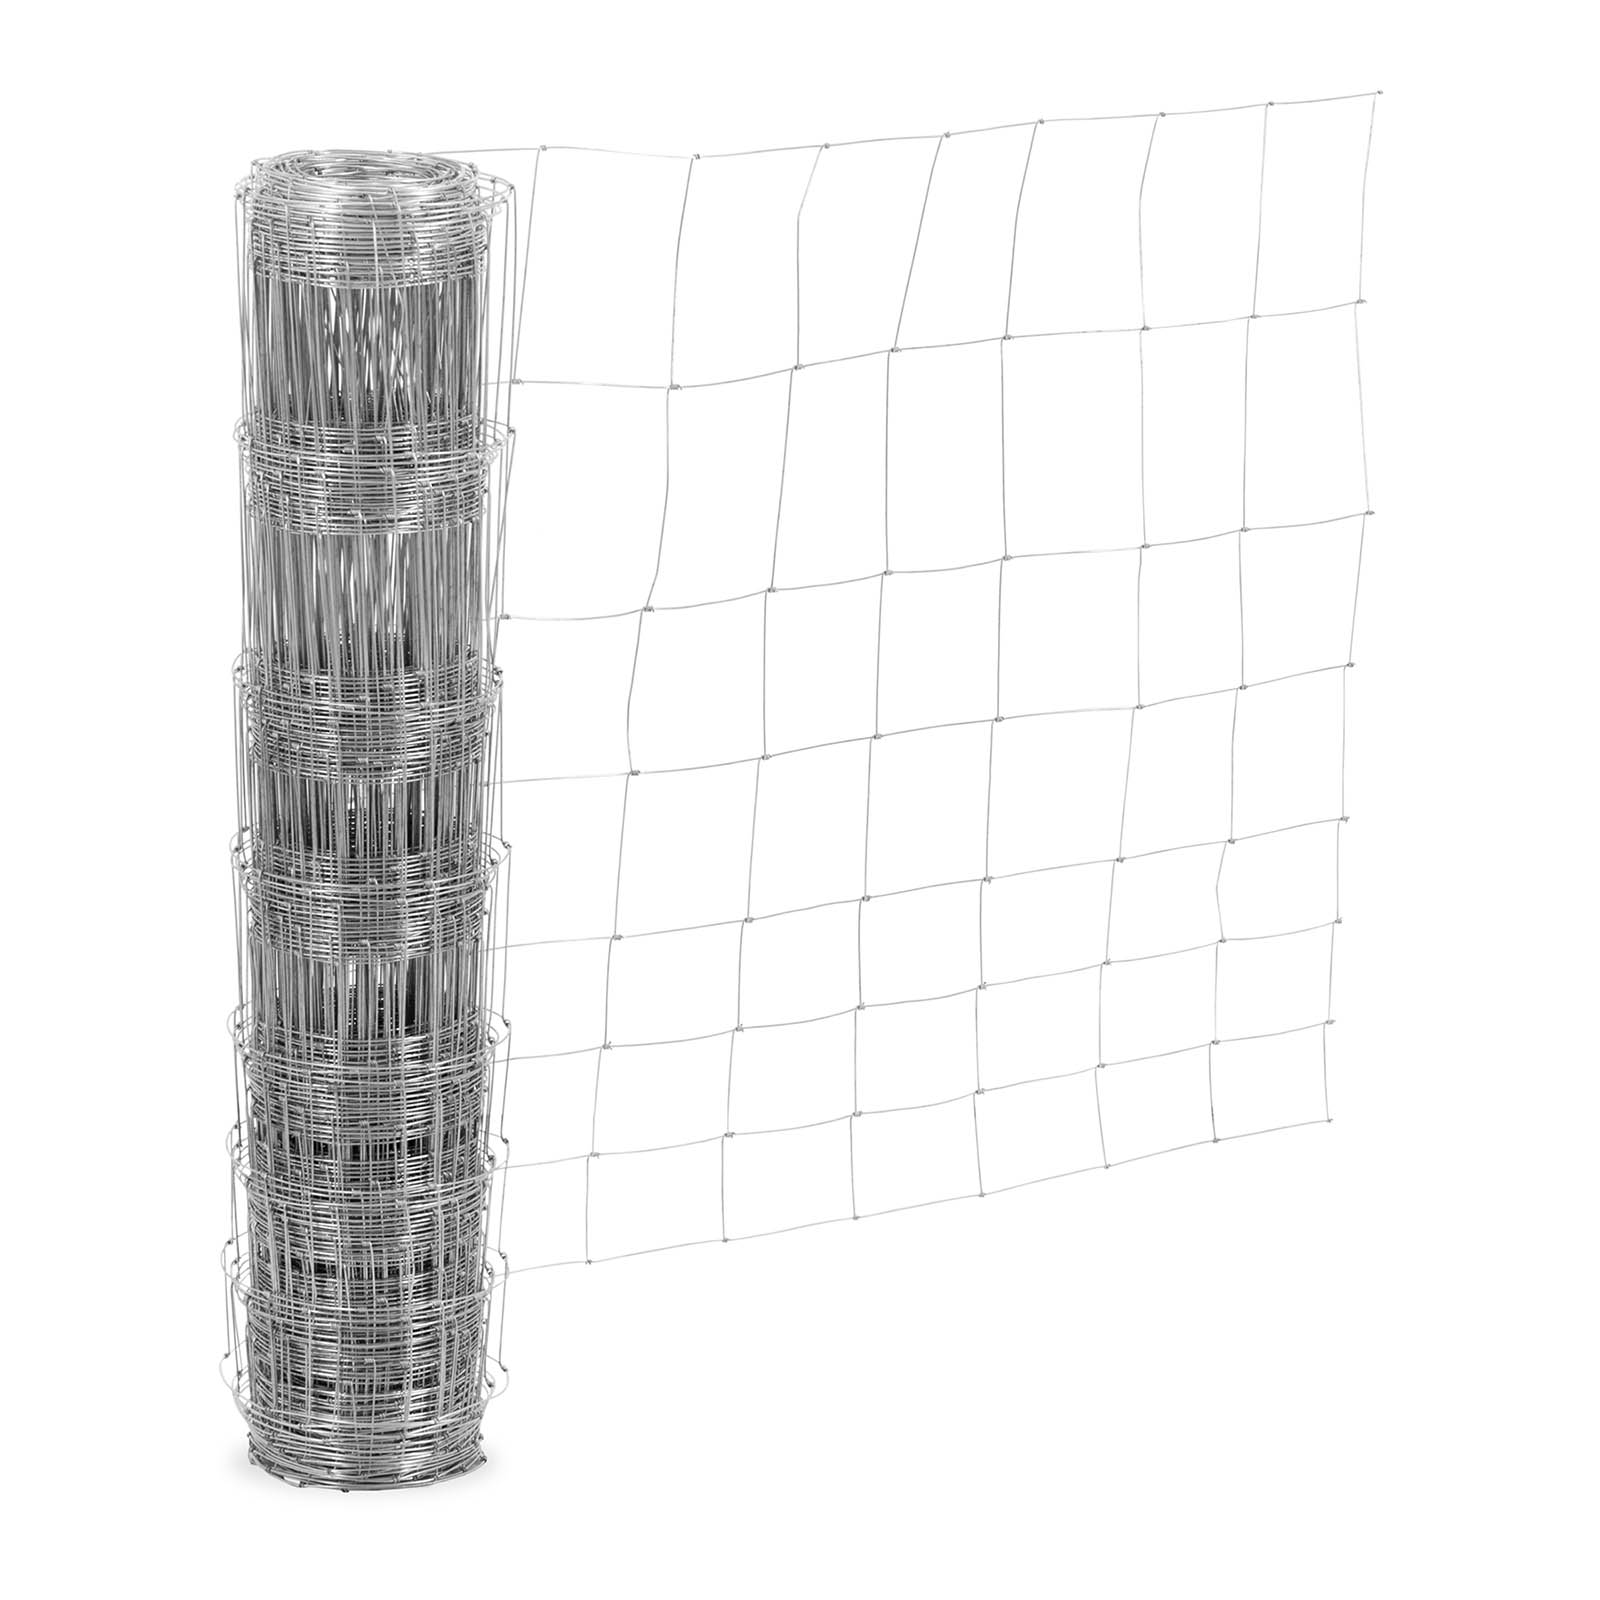 Ograda za pašnjak - visina 100 cm - dužina 50 m - širina mreže 15 cm